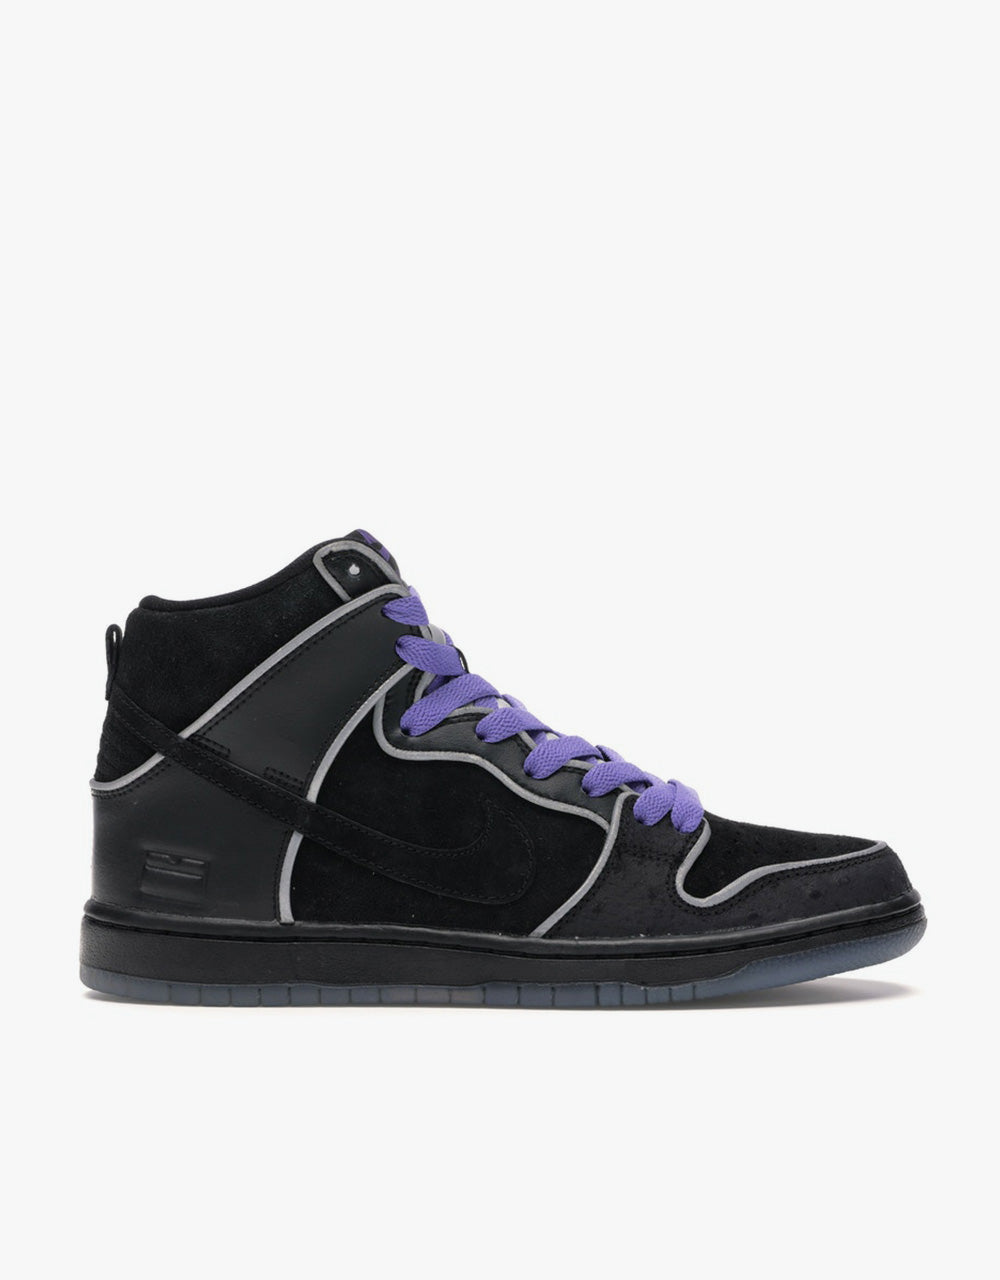 Nike SB Dunk High Premium Skate Shoes - Black/Black Wht-Purple Haze